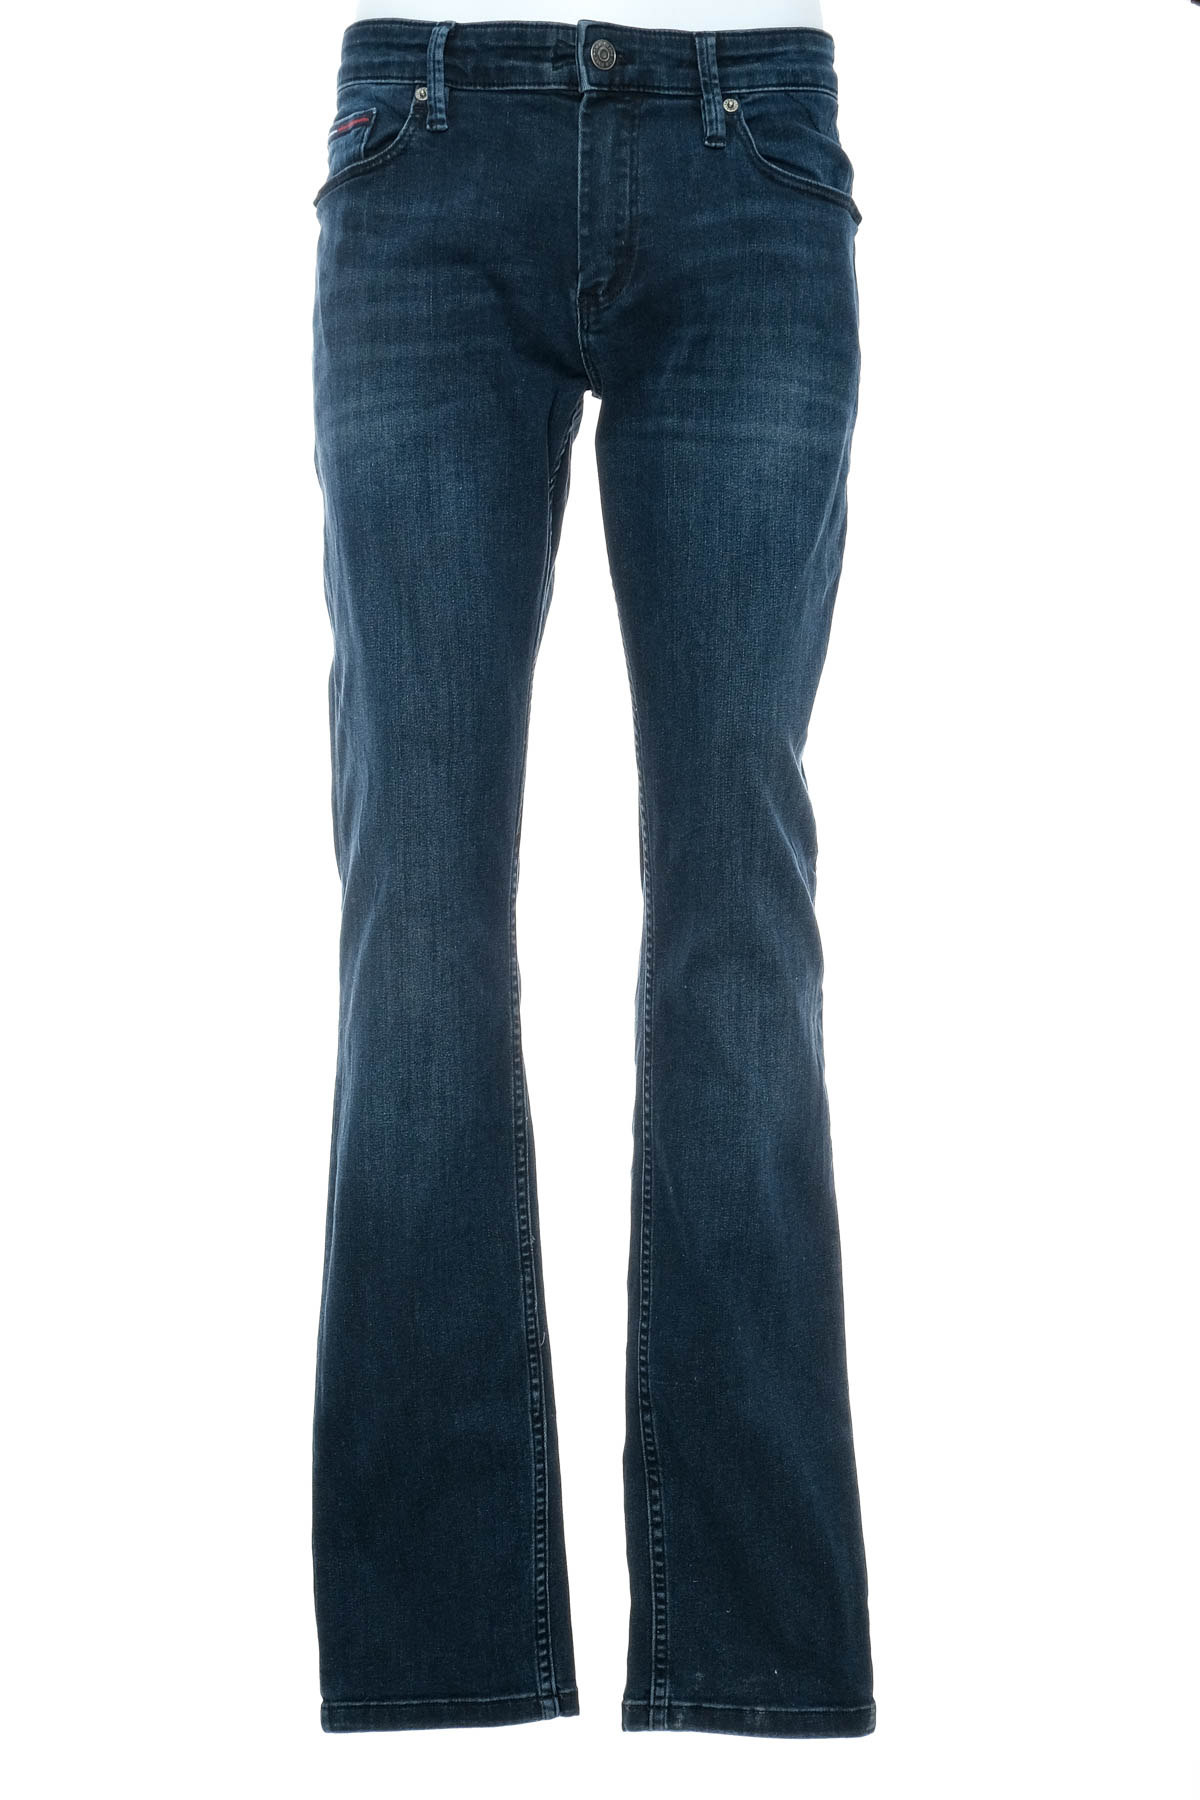 Jeans pentru bărbăți - TOMMY JEANS - 0